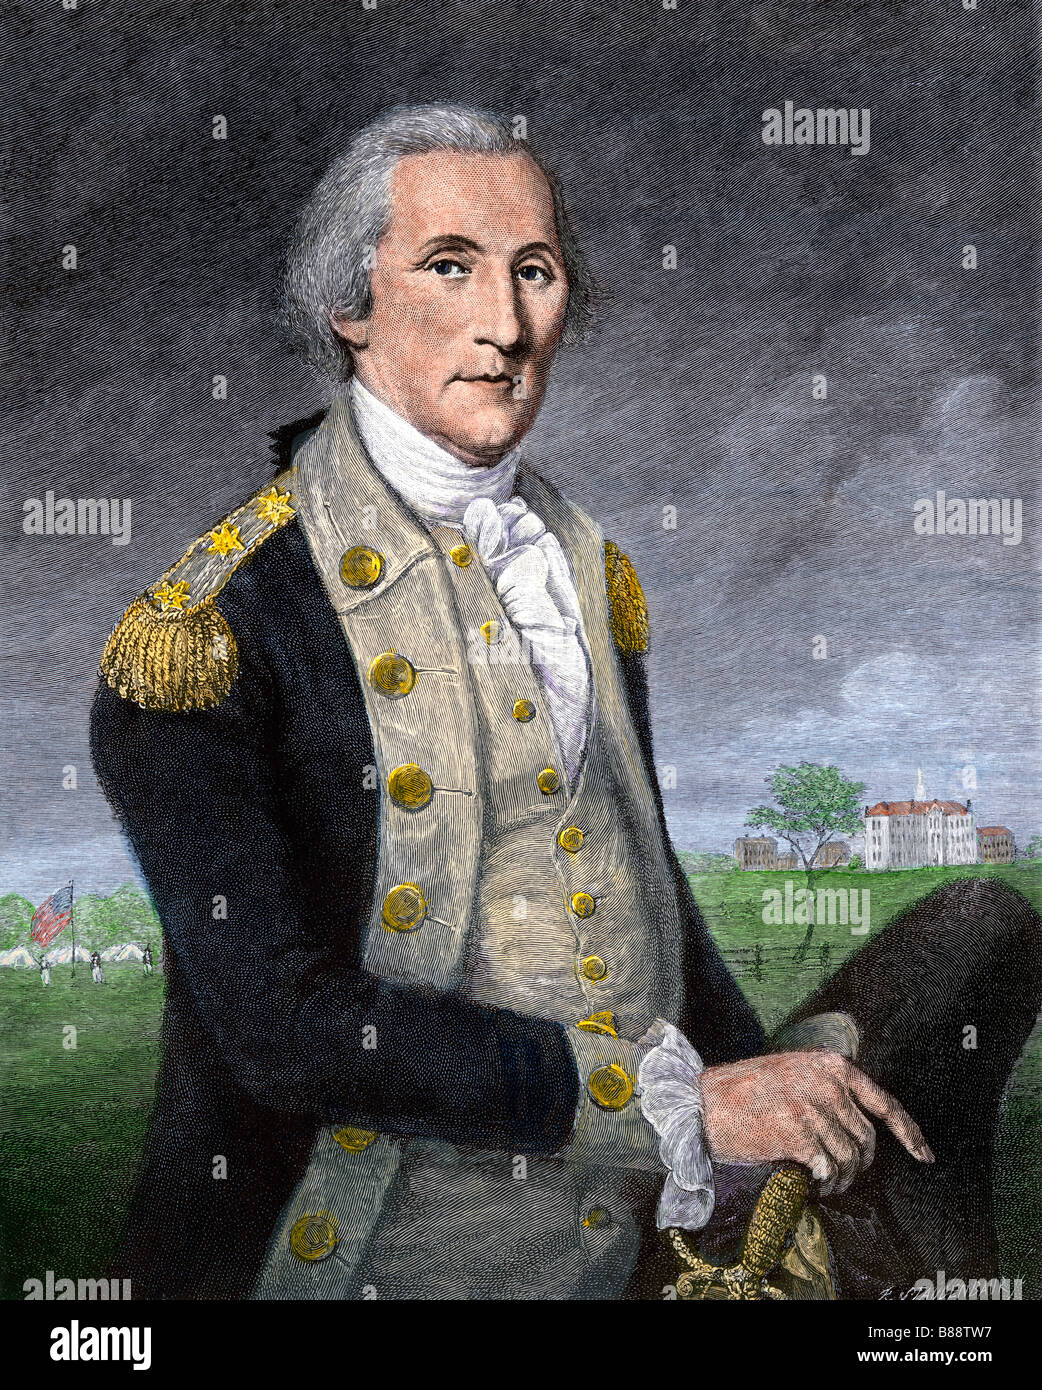 El General George Washington en el cierre de la guerra revolucionaria. Grabado pintado a mano Foto de stock